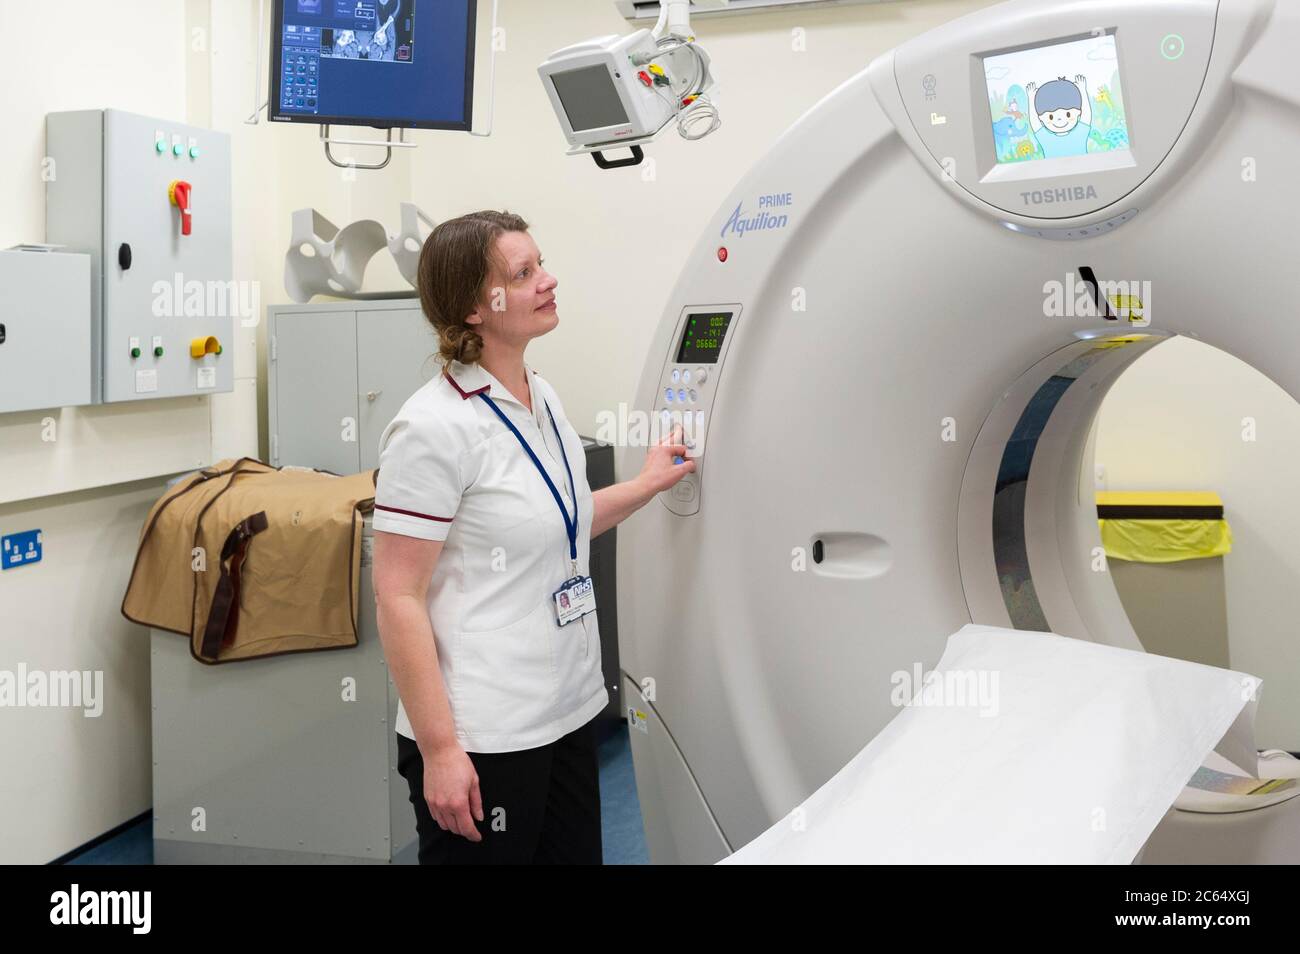 Ein CT-Scanner in einer Krankenhausabteilung. Ein computergestützter Tomographiescan (CT oder CAT Scan) verwendet Computer und rotierende Röntgengeräte Stockfoto